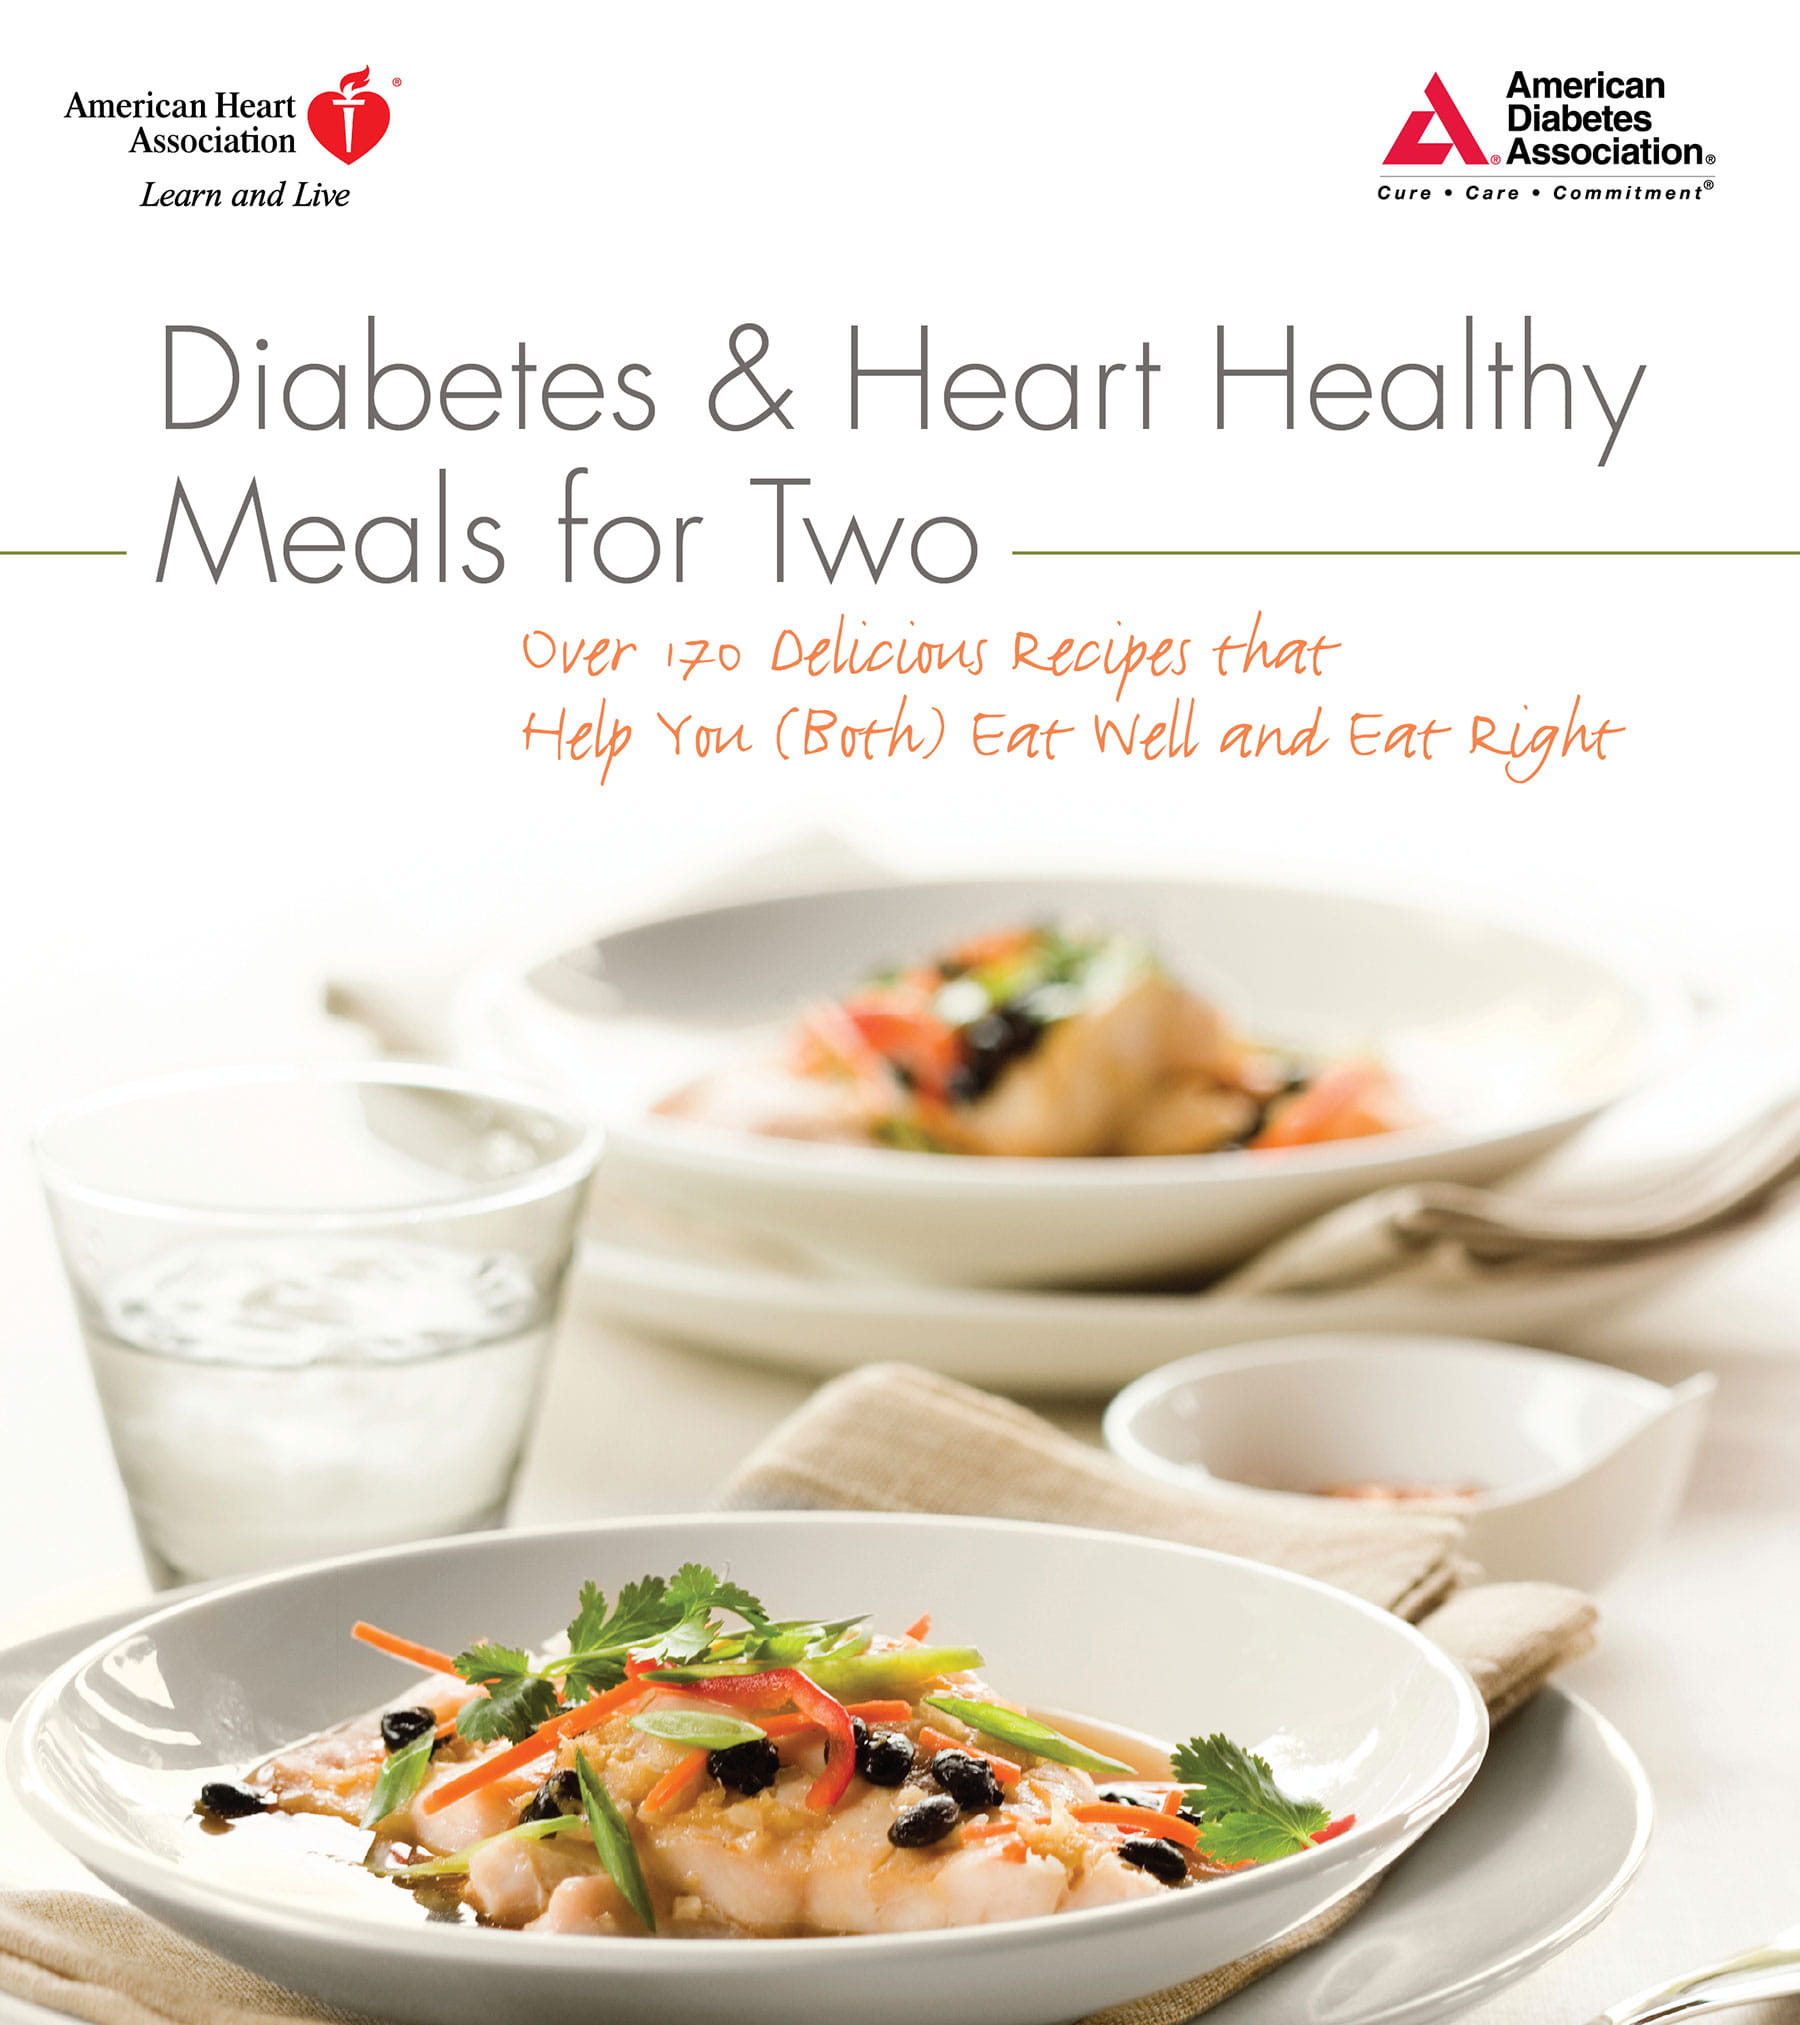 糖尿病和心脏健康双人餐